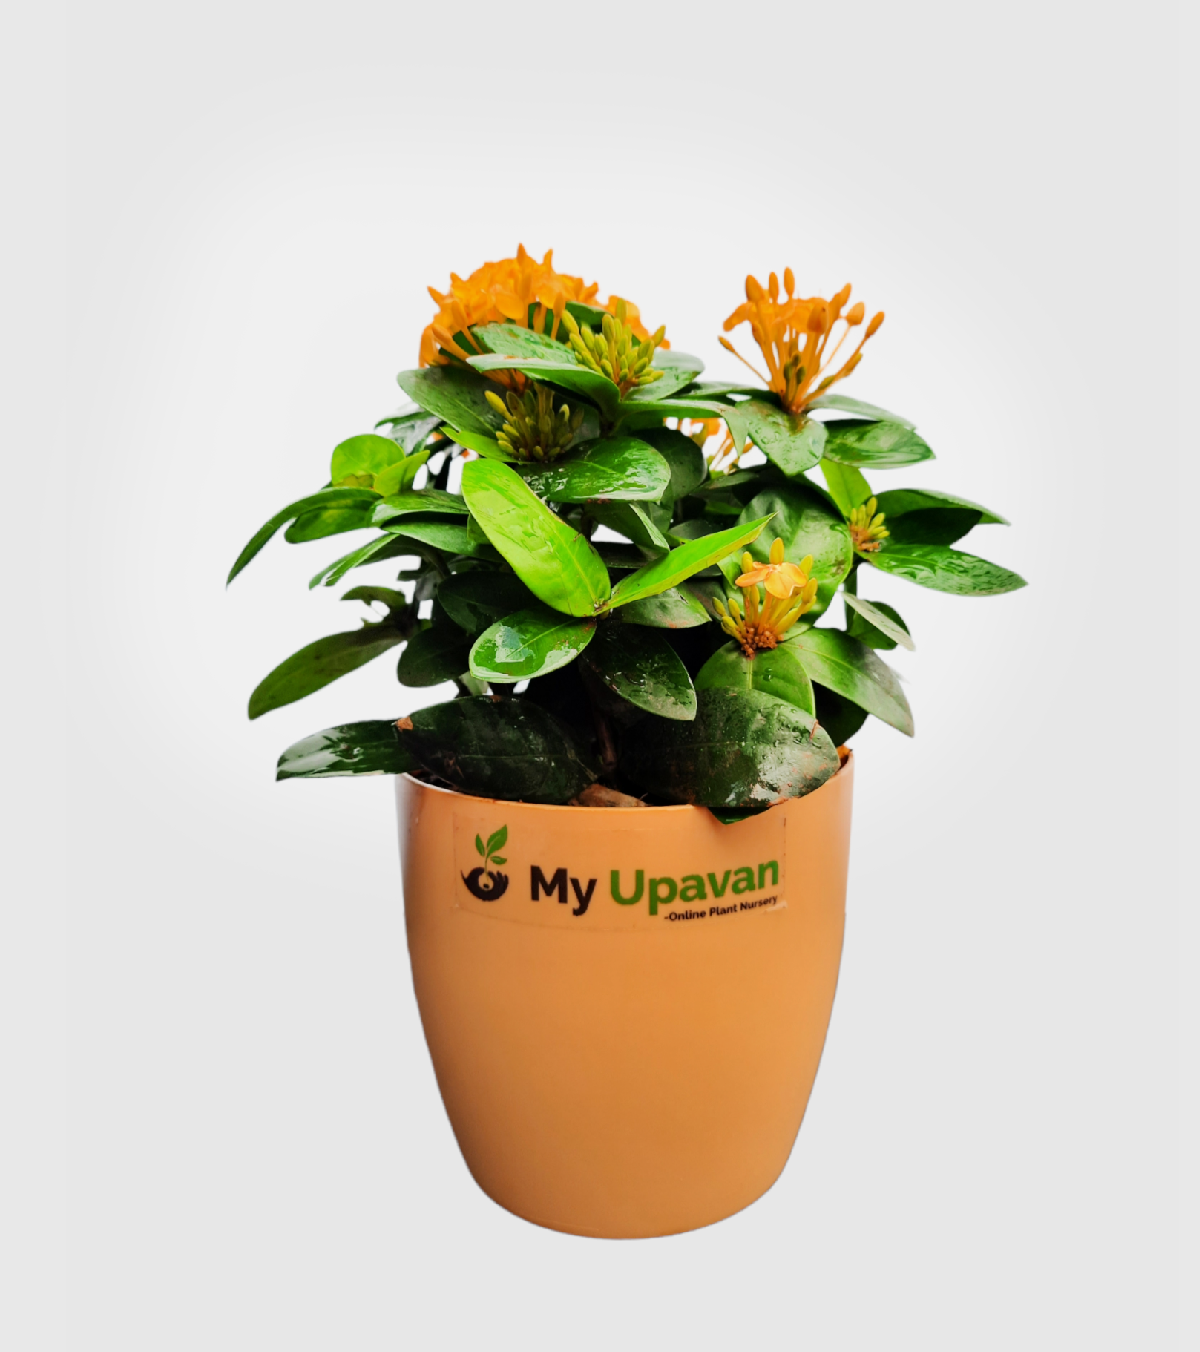 Ixora [Rugmini] Plant - Dark Orange